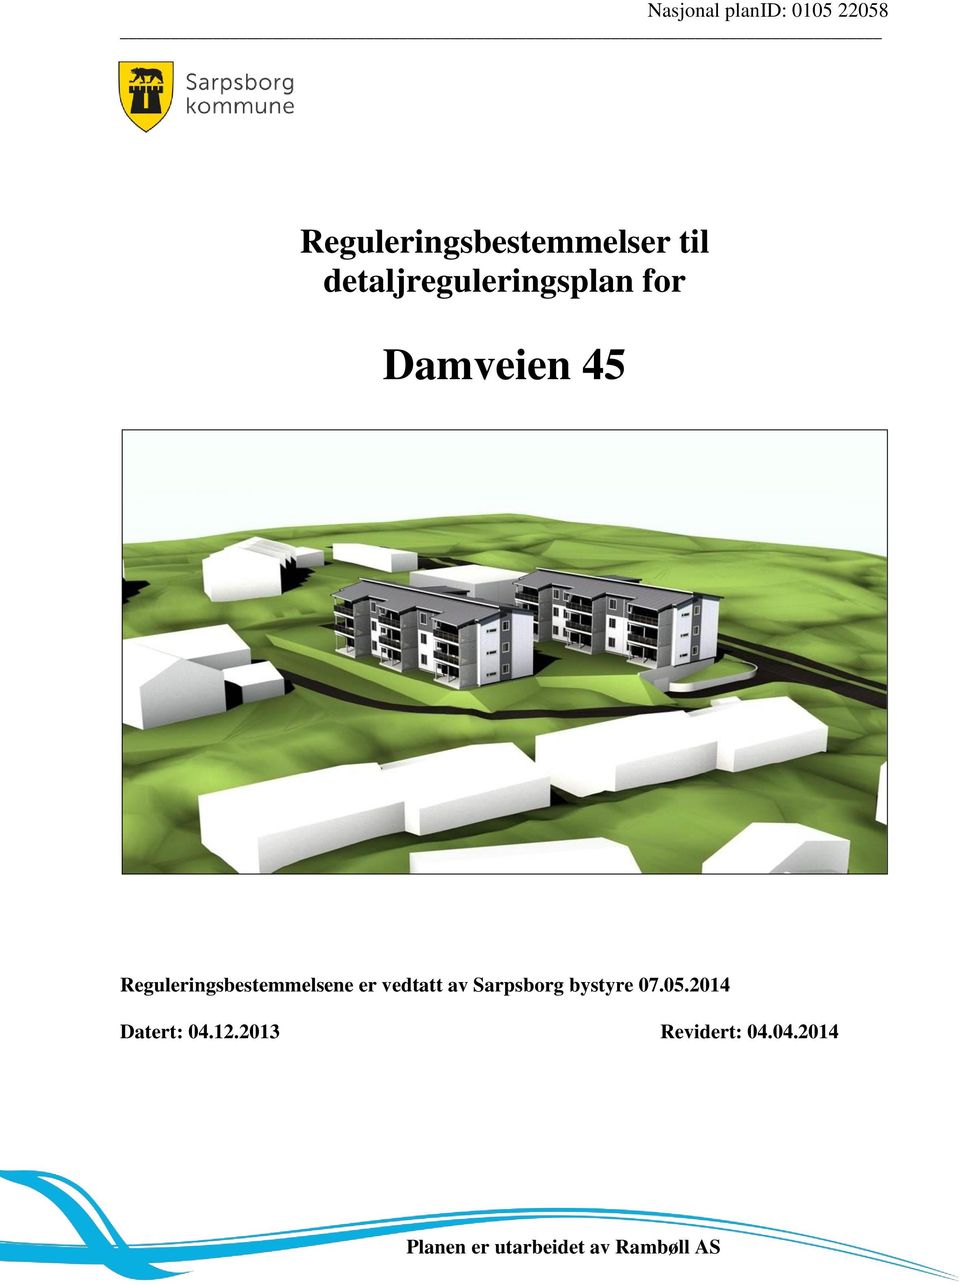 Reguleringsbestemmelsene er vedtatt av Sarpsborg bystyre